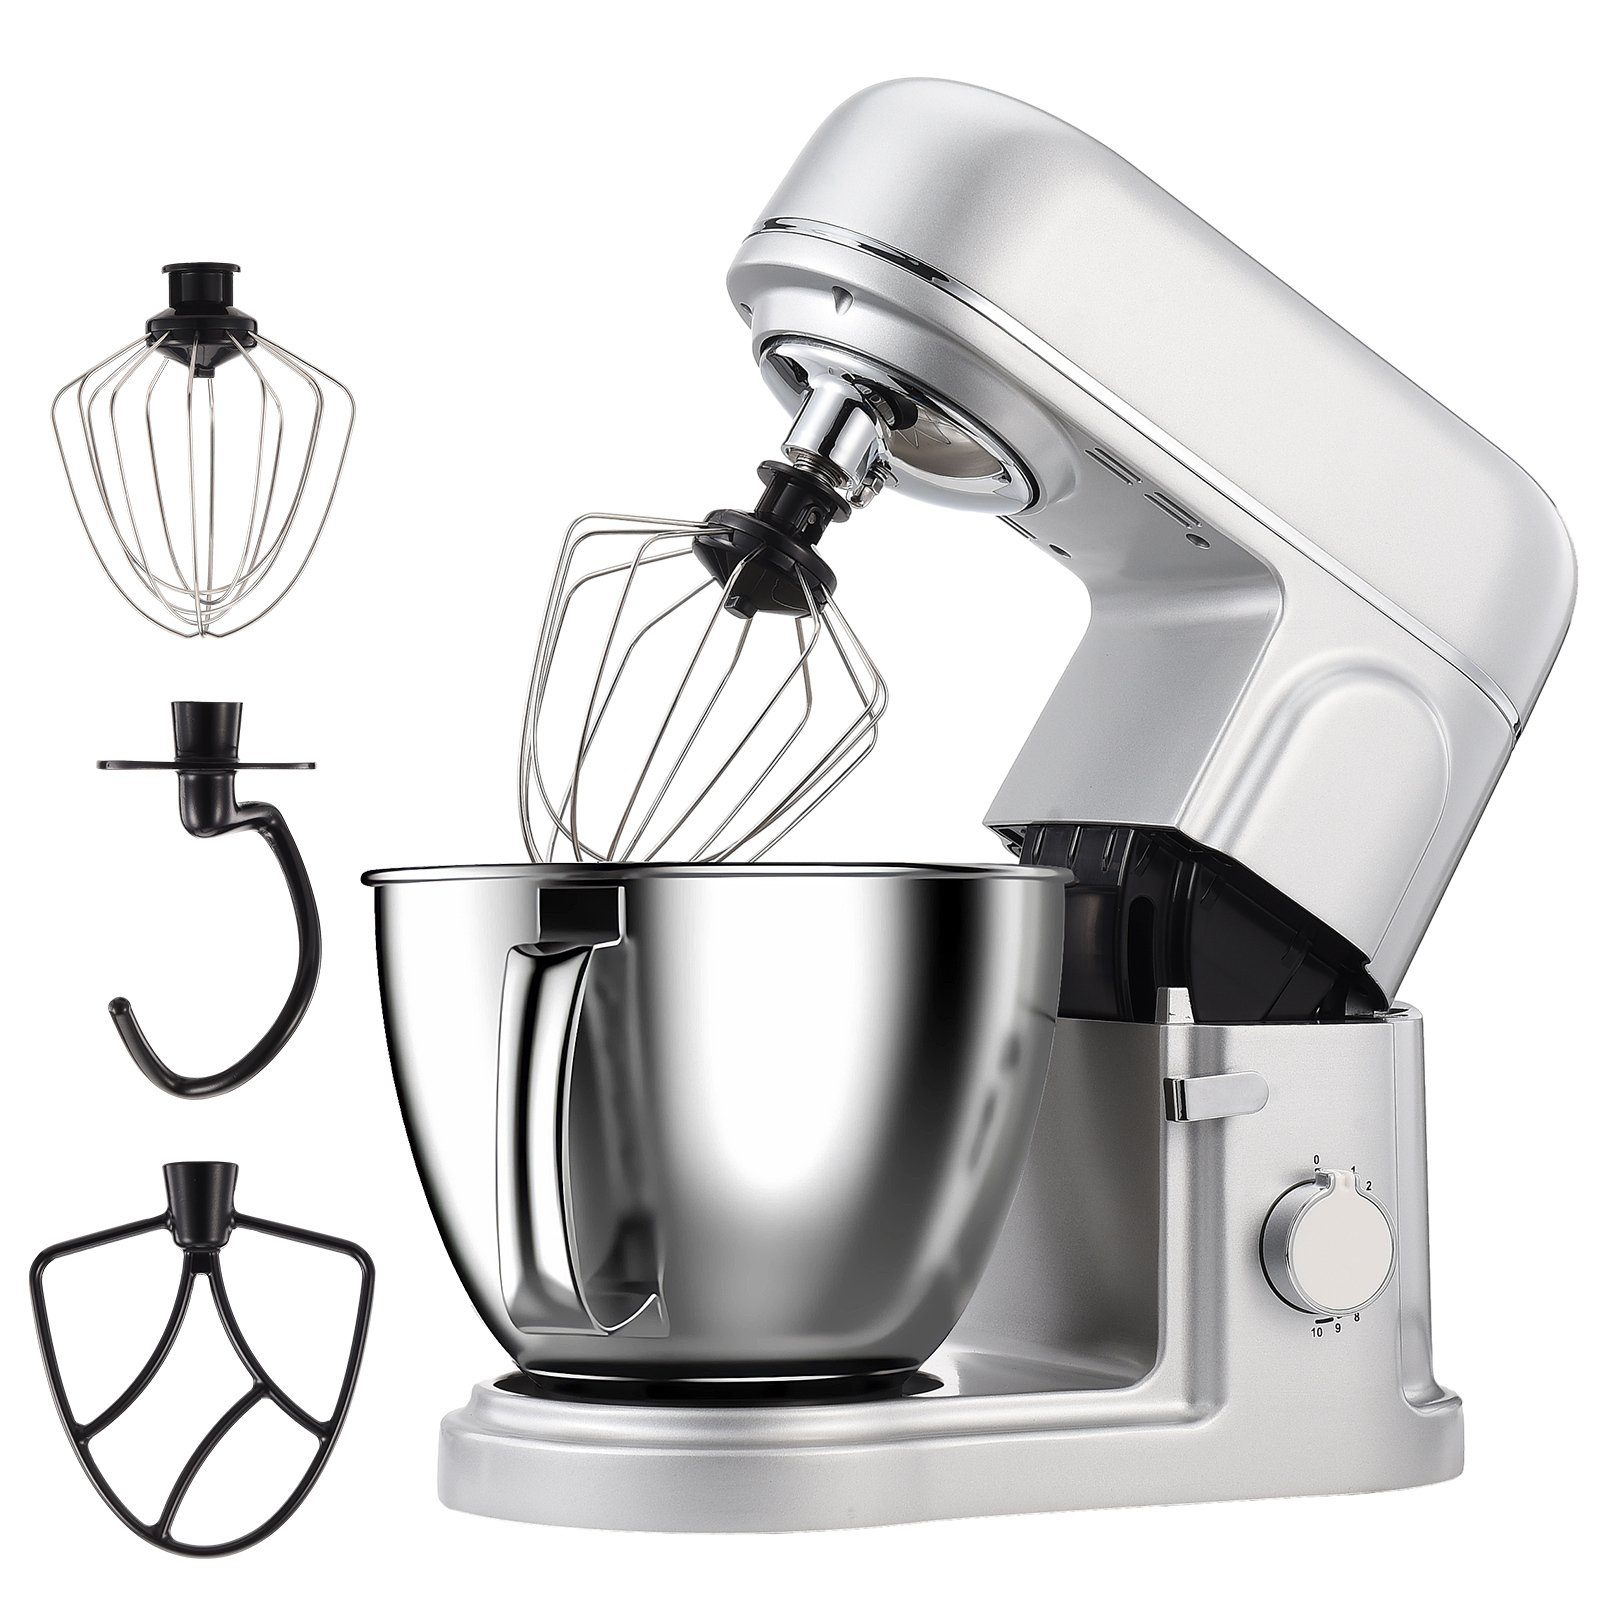 FUROKOY Küchenmaschine mit Silber Kleine Mixer Multifunktional Haushaltsgeräte Küchenmaschine Kochfunktion Maschine